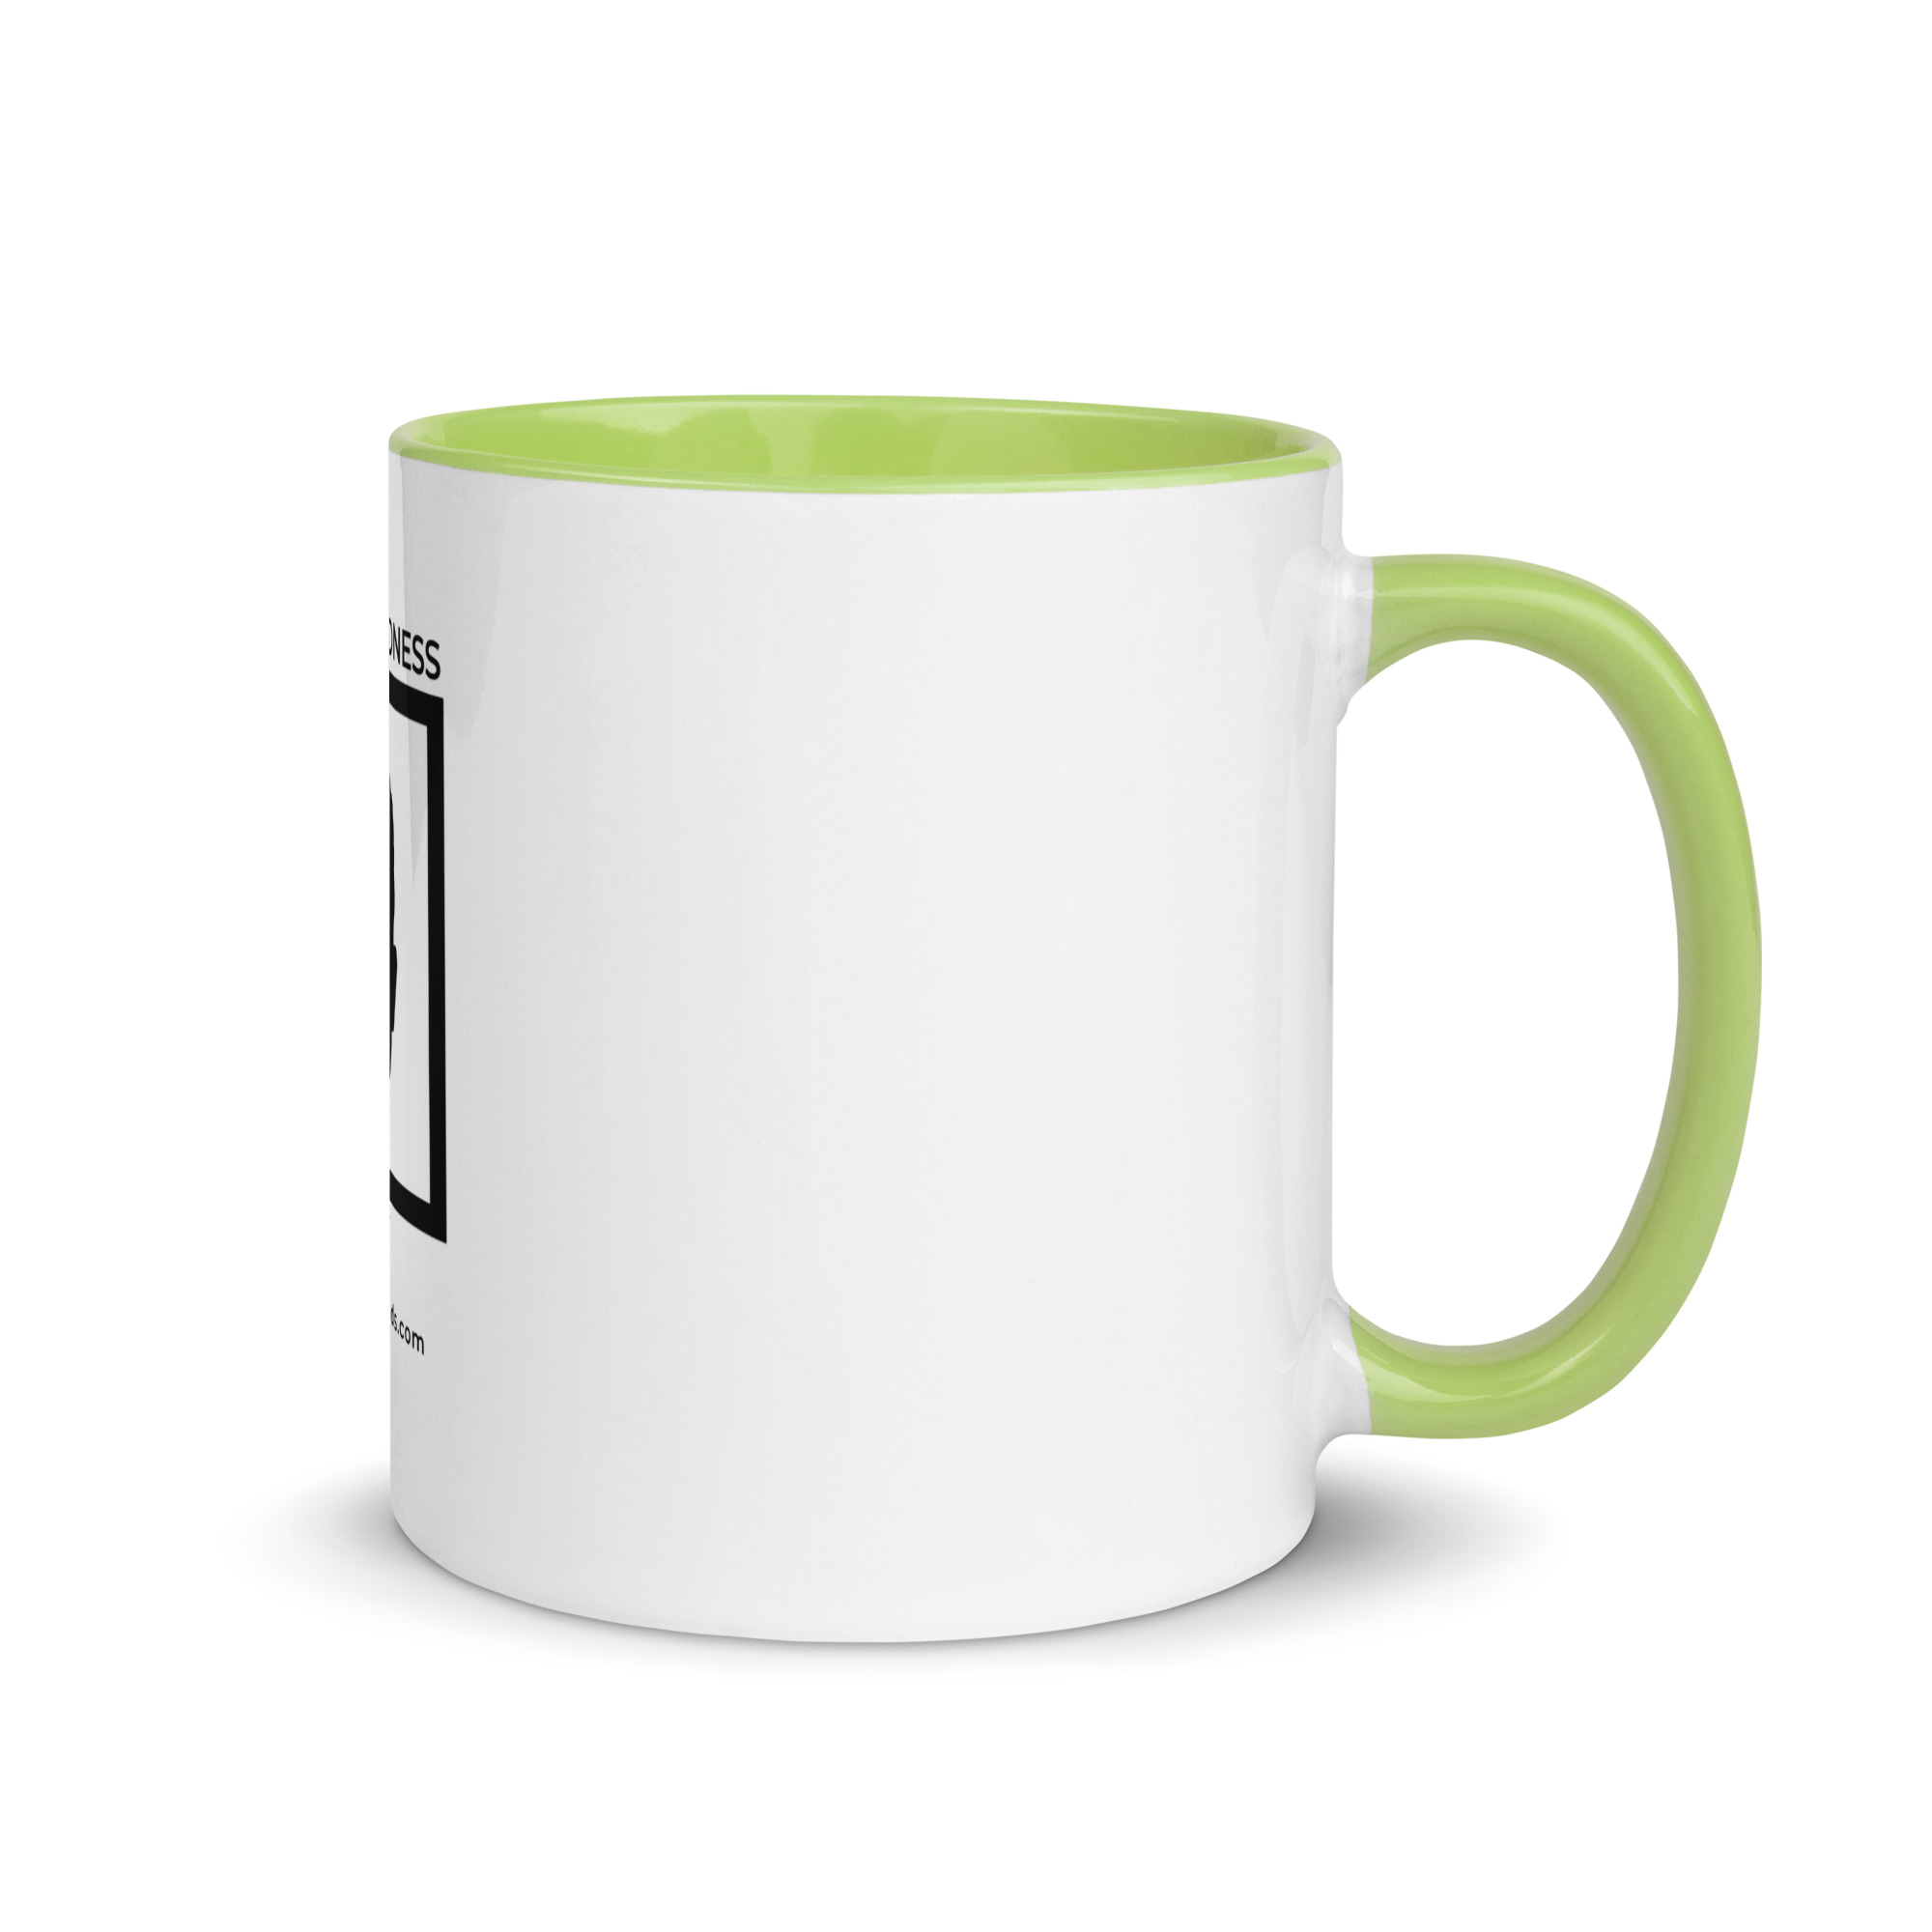 white-ceramic-mug-with-color-inside-green-11-oz-right-6522a1a404414.jpg